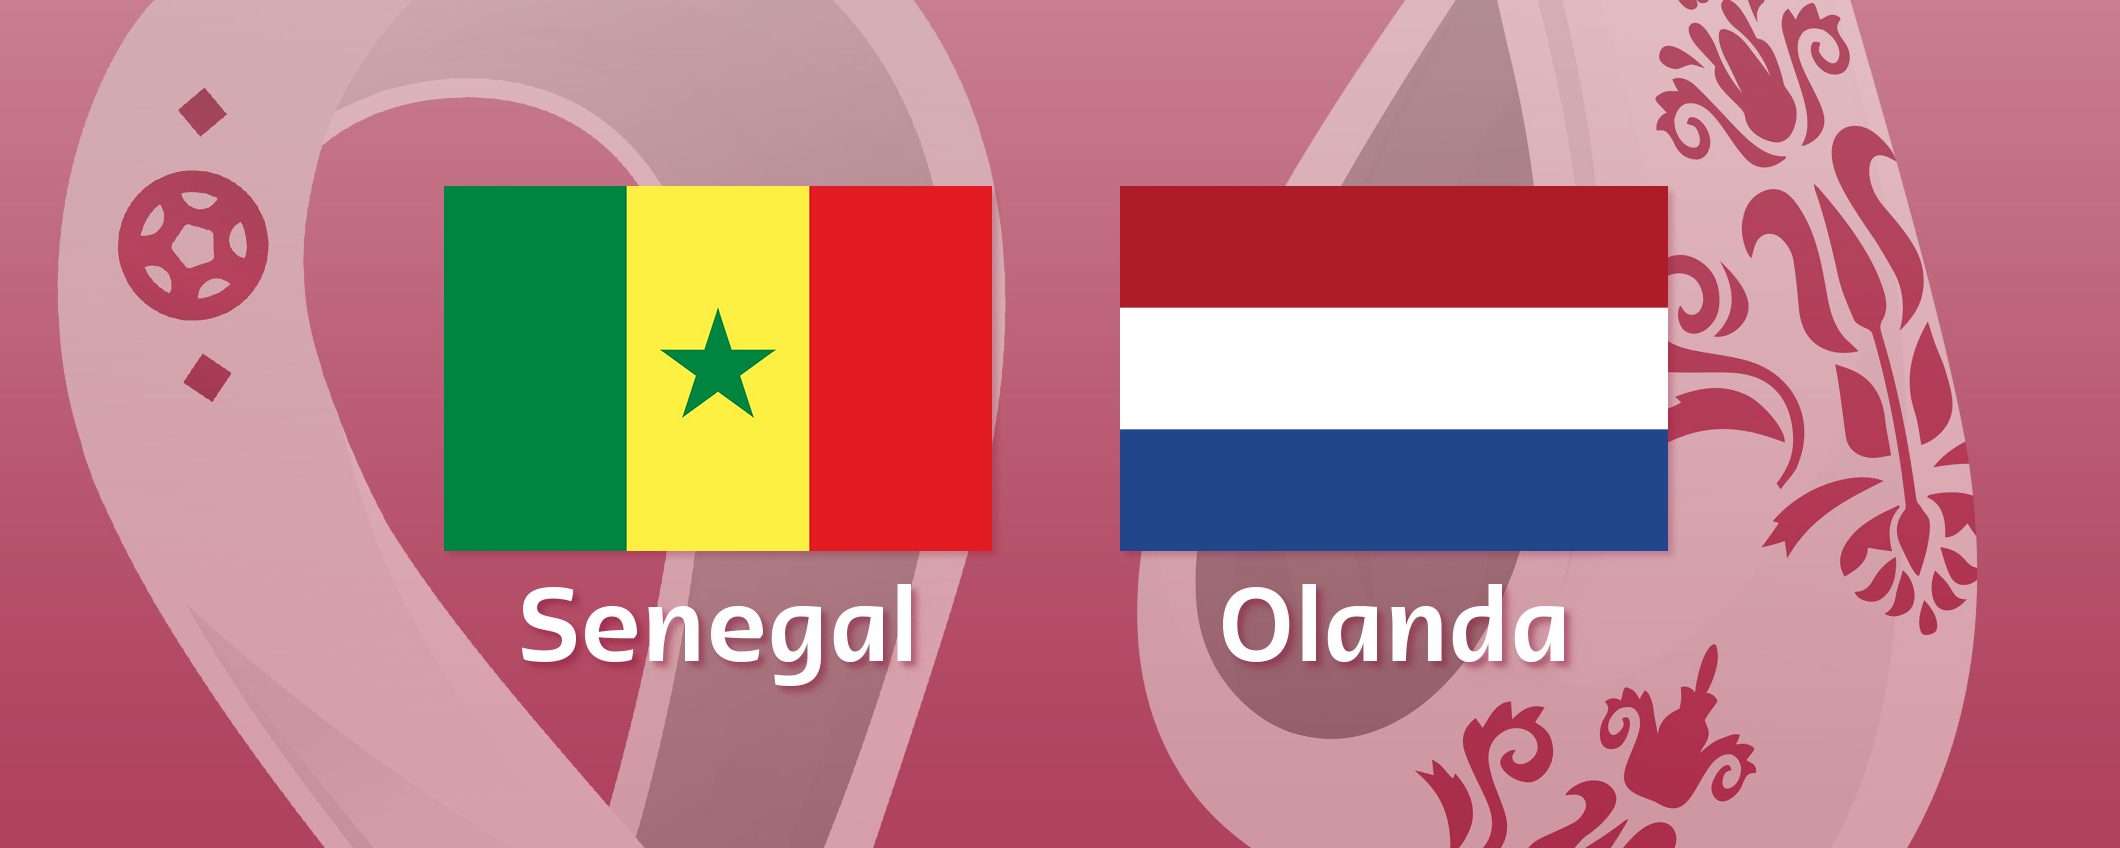 Come vedere Senegal-Olanda in streaming (Mondiali)